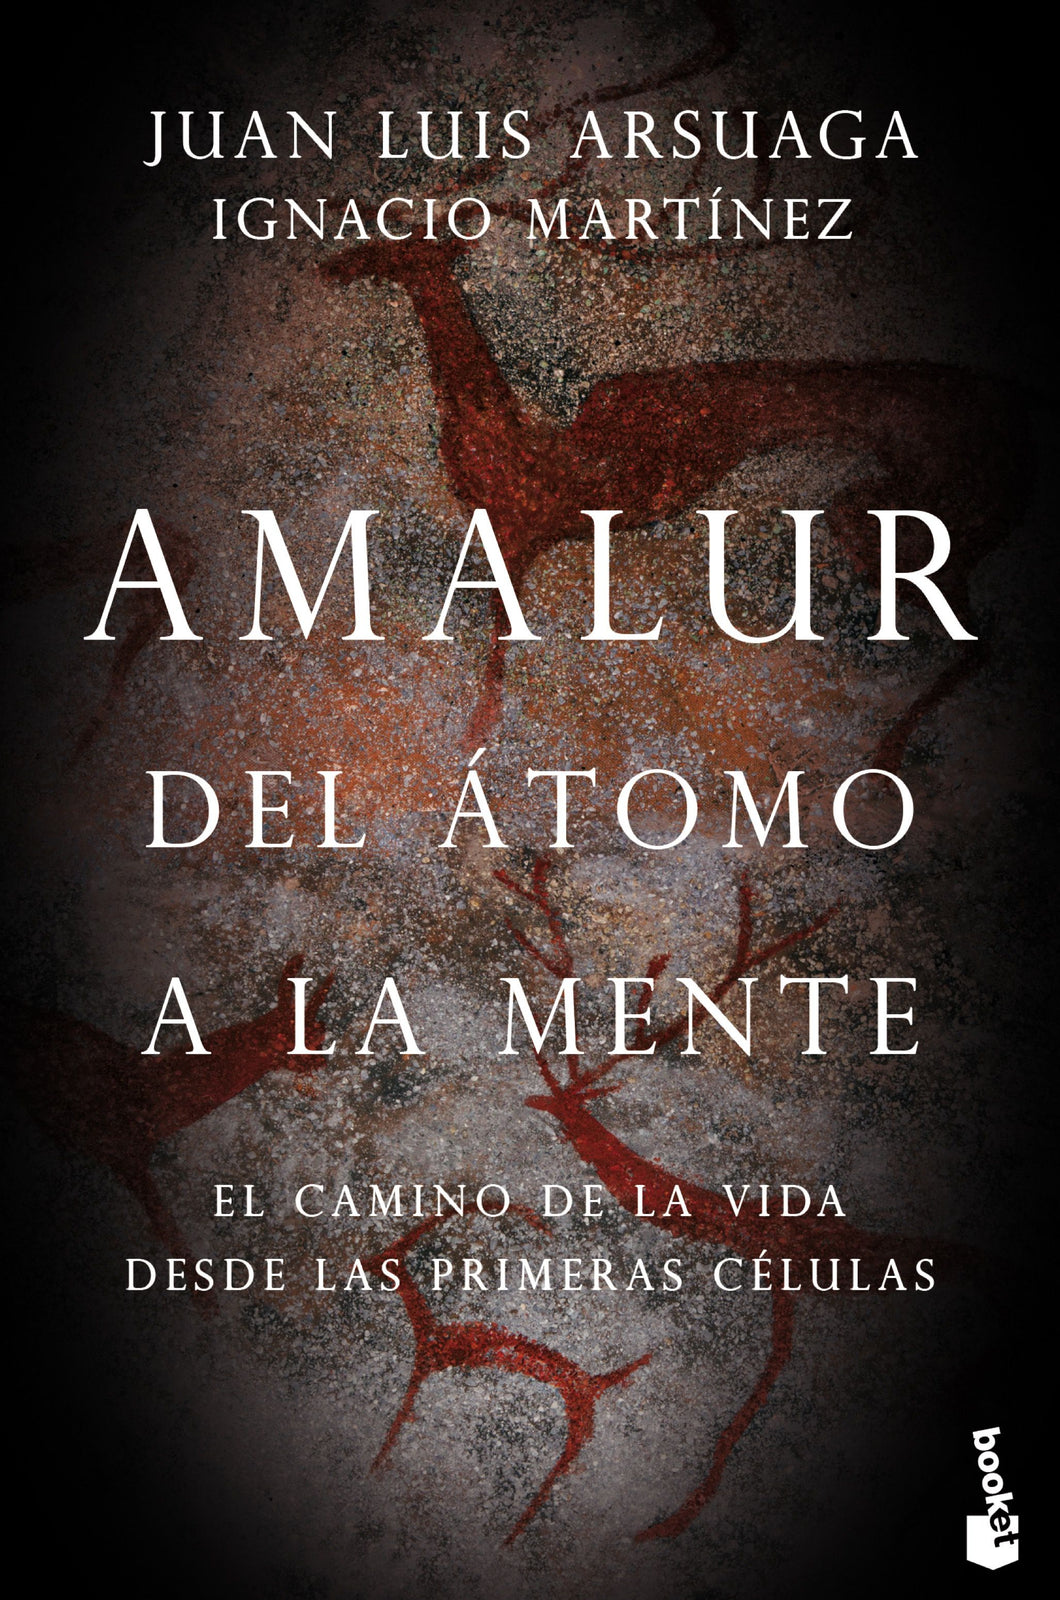 AMALUR -Ignacio Martínez, Juan Luis Arsuaga